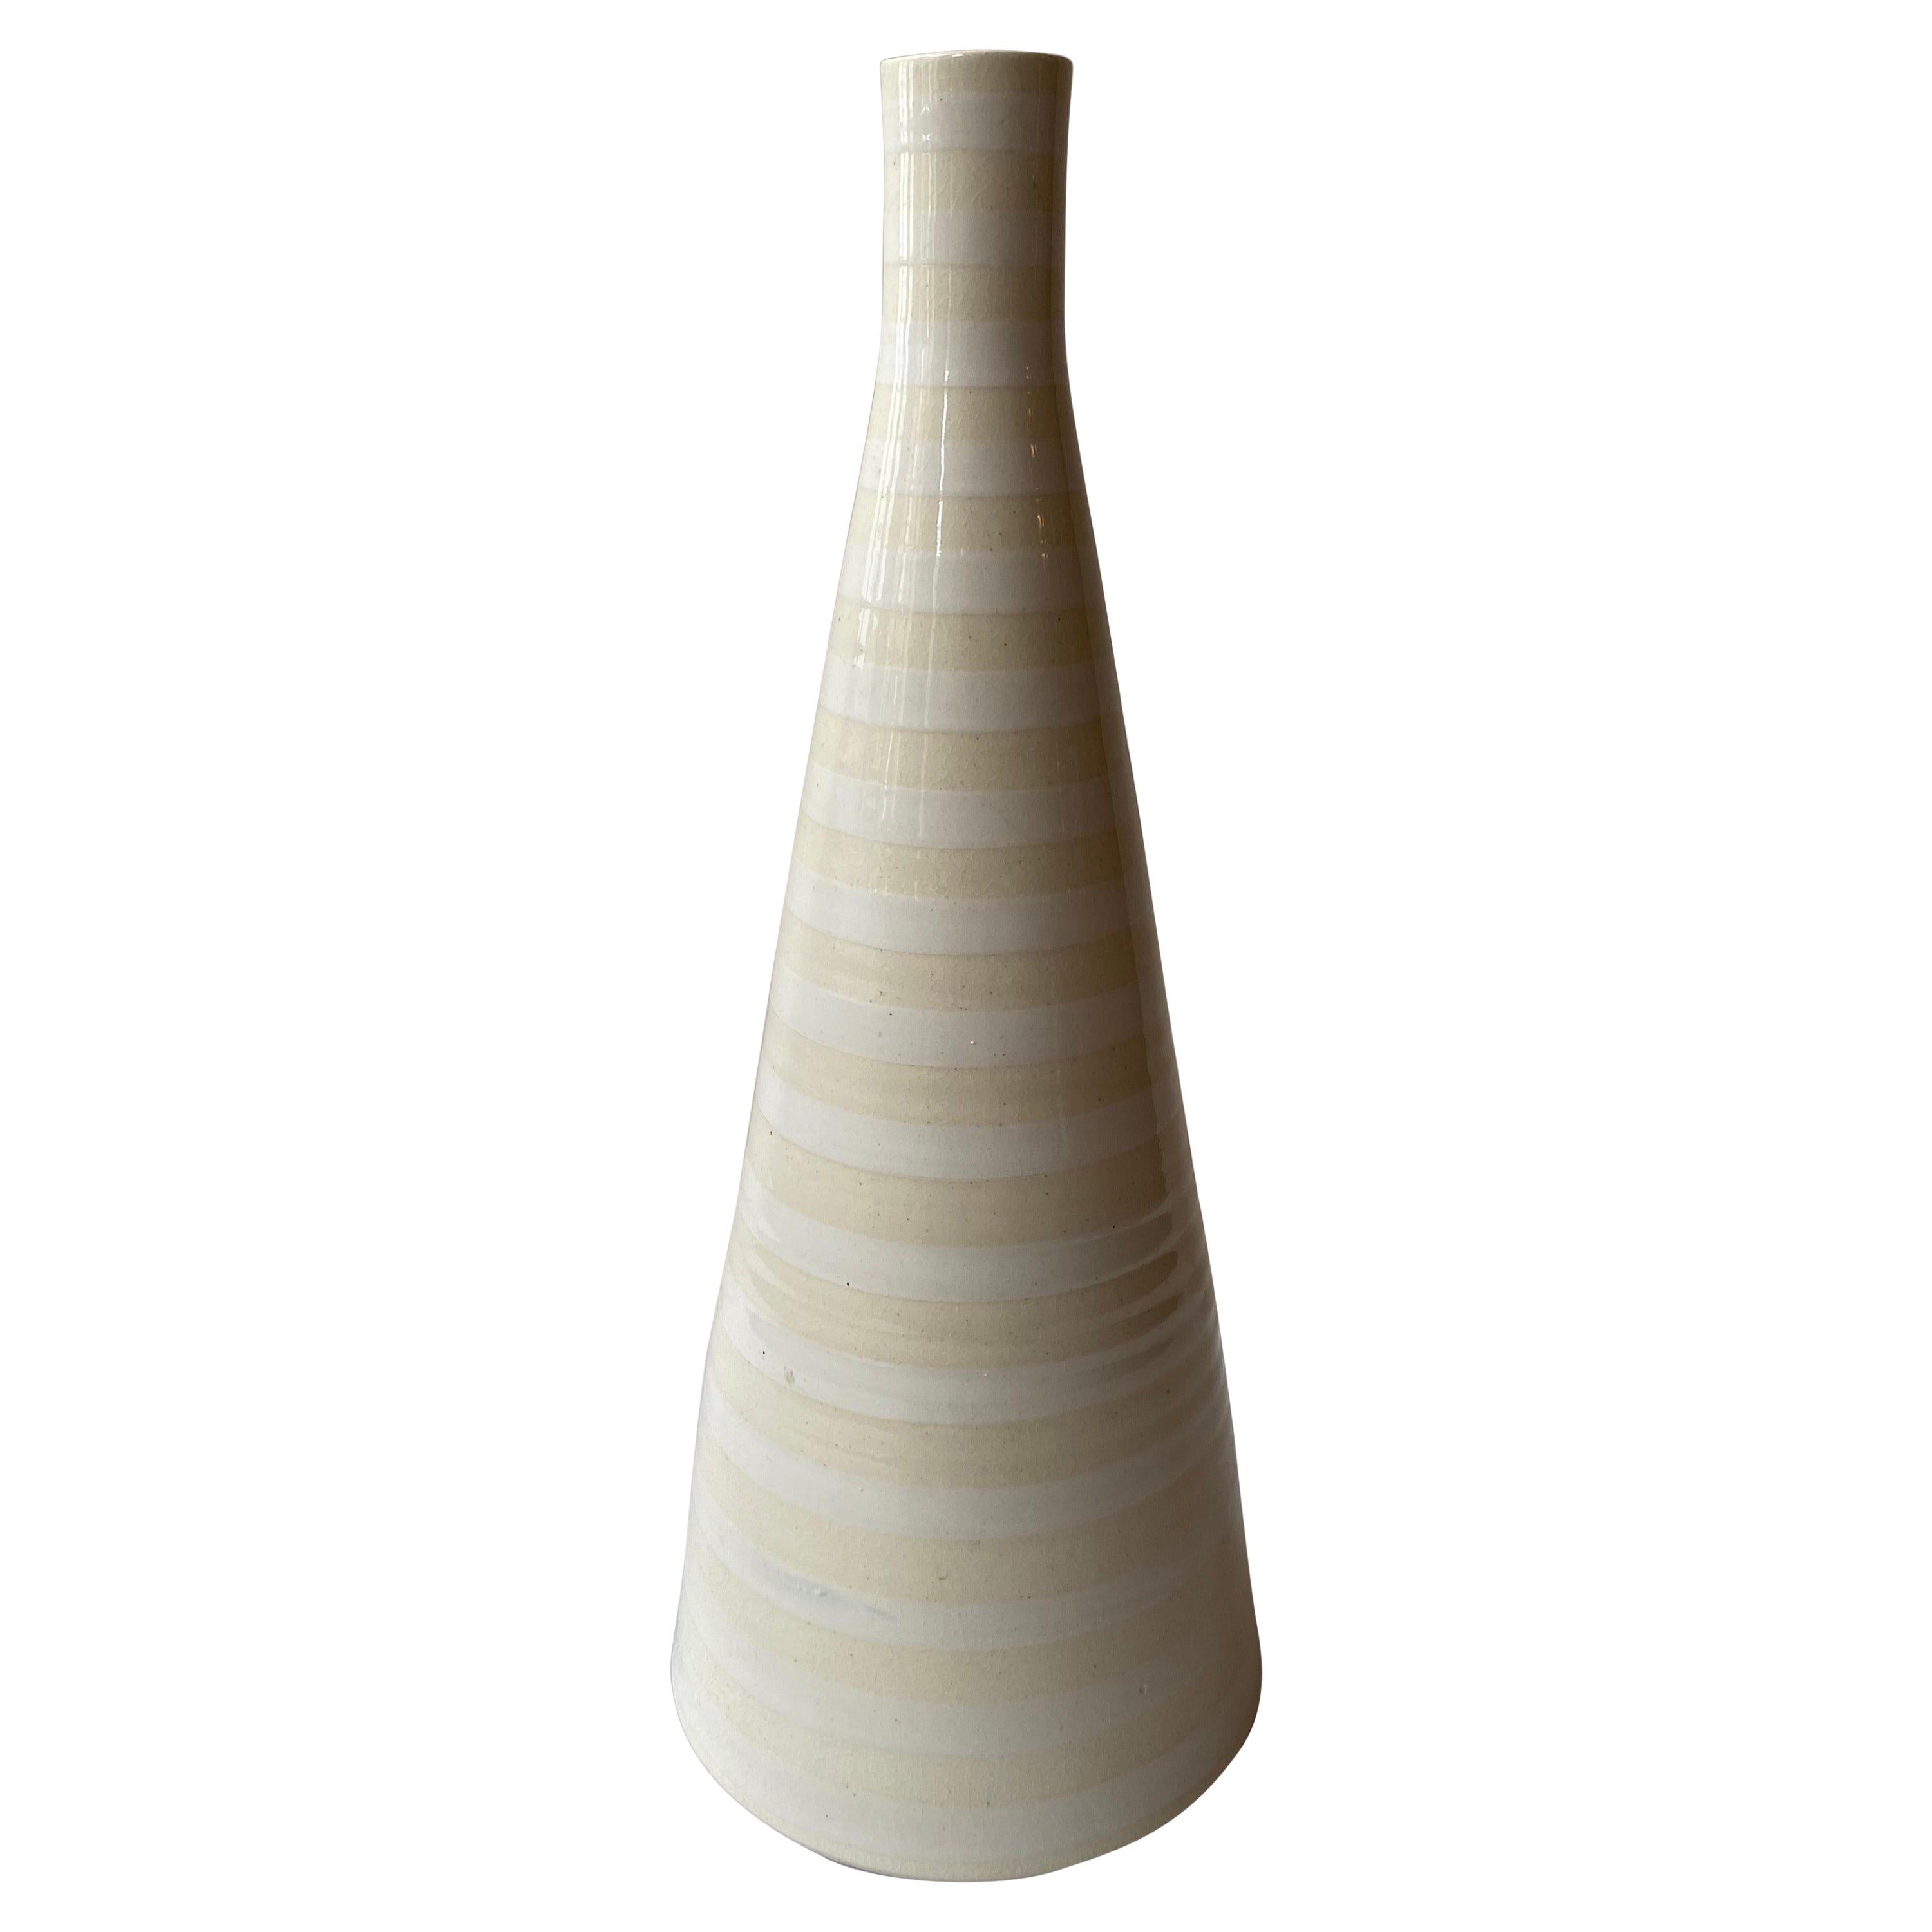 Jonathan Adler Hand-Thrown Vase For Sale